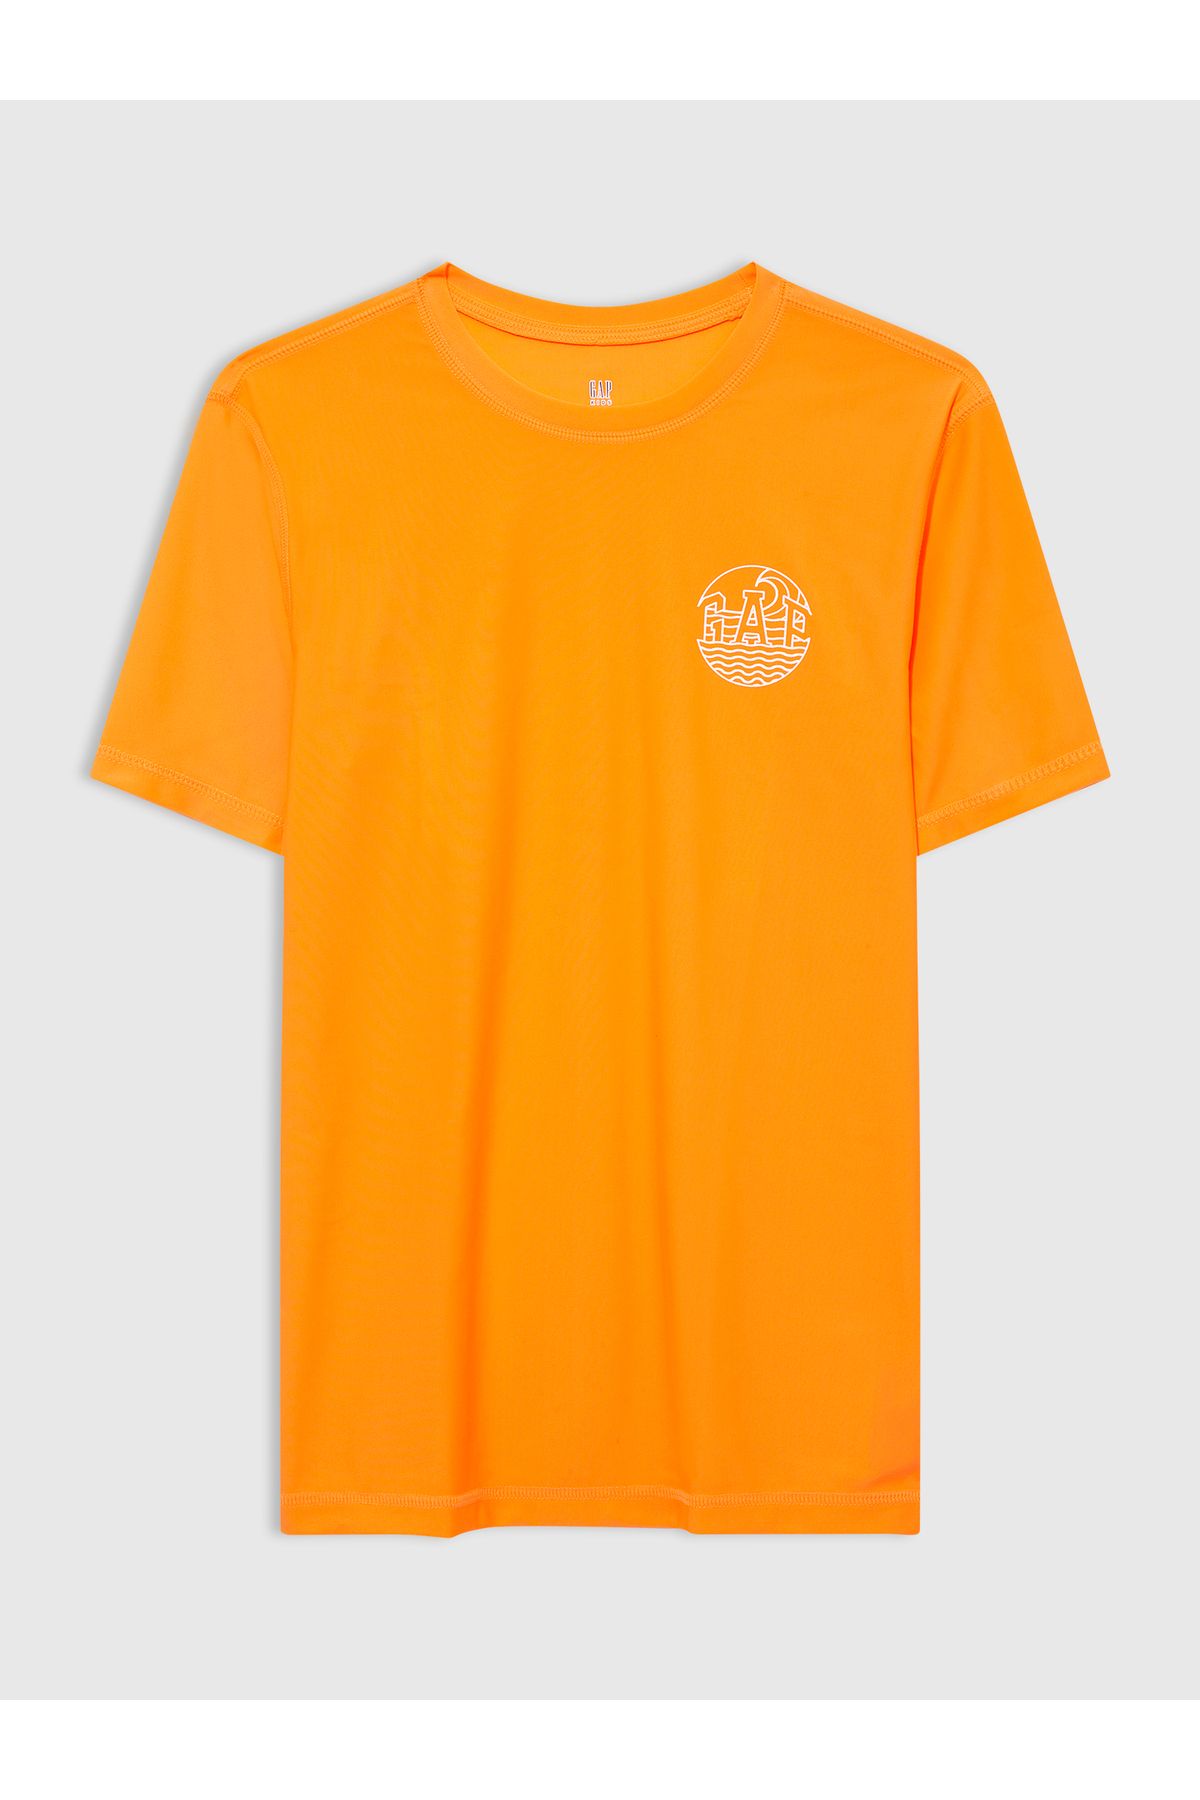 GAP Erkek Çocuk Turuncu Grafik Baskılı Mayo T-Shirt